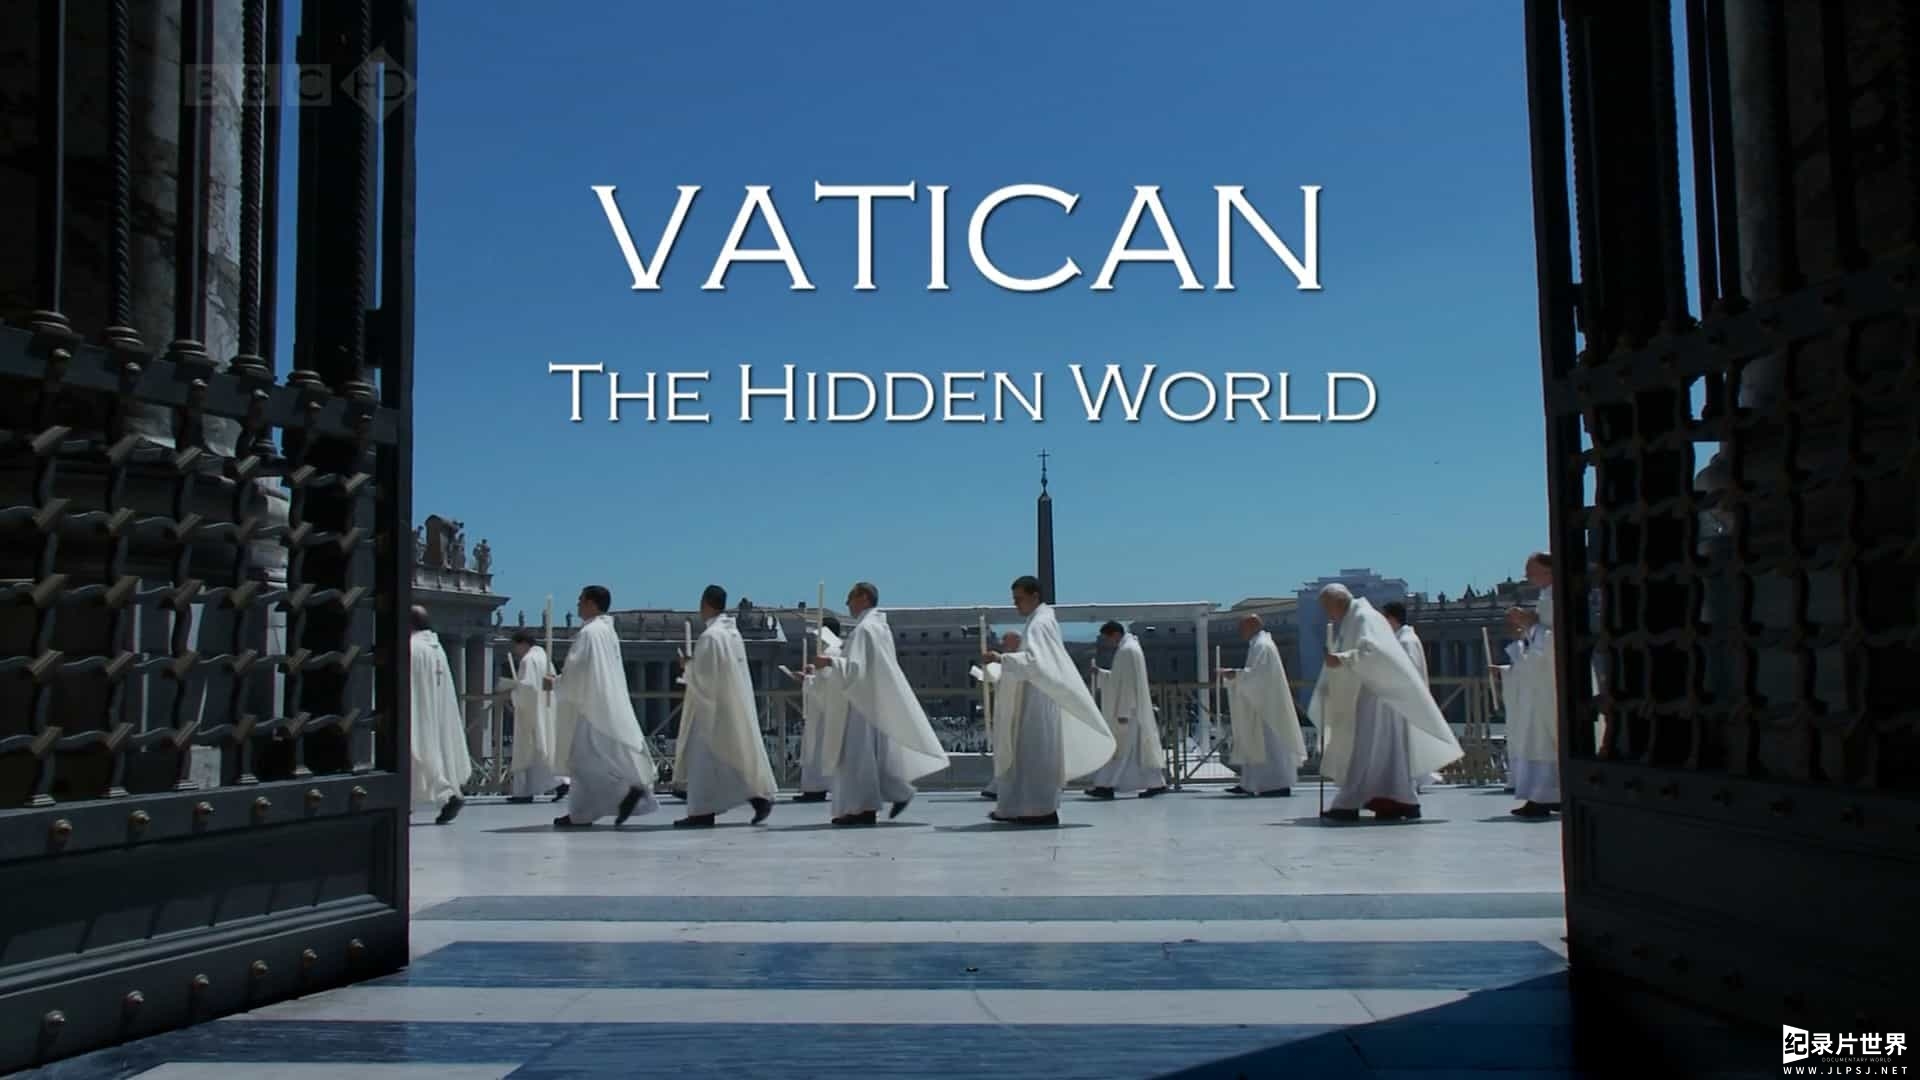 BBC纪录片《梵蒂冈:隐秘的世界 Vatican The Hidden World》全1集